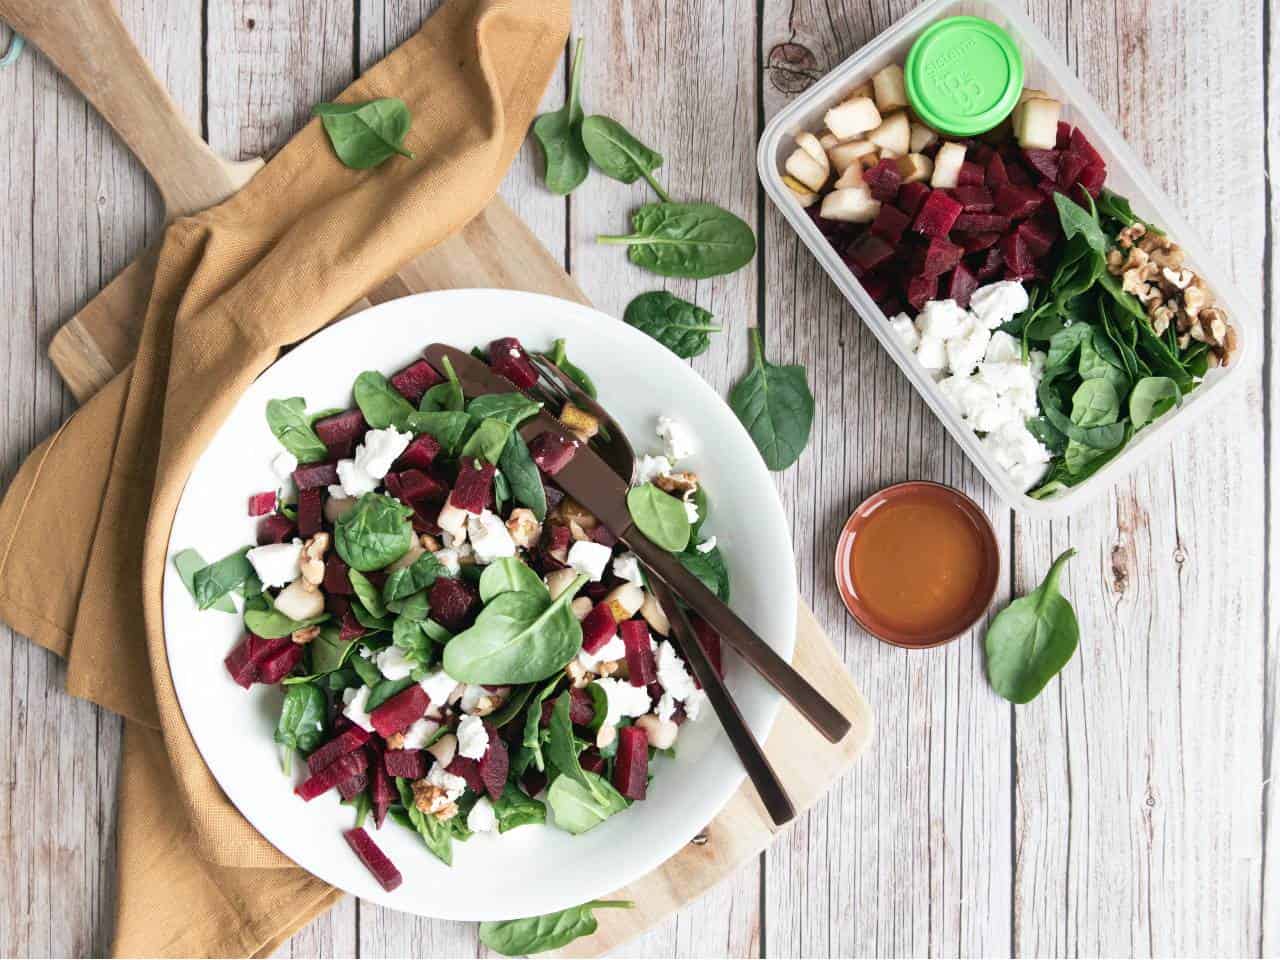 Lunch salade meenemen? Probeer deze bietensalade met geitenkaas en spinazie.